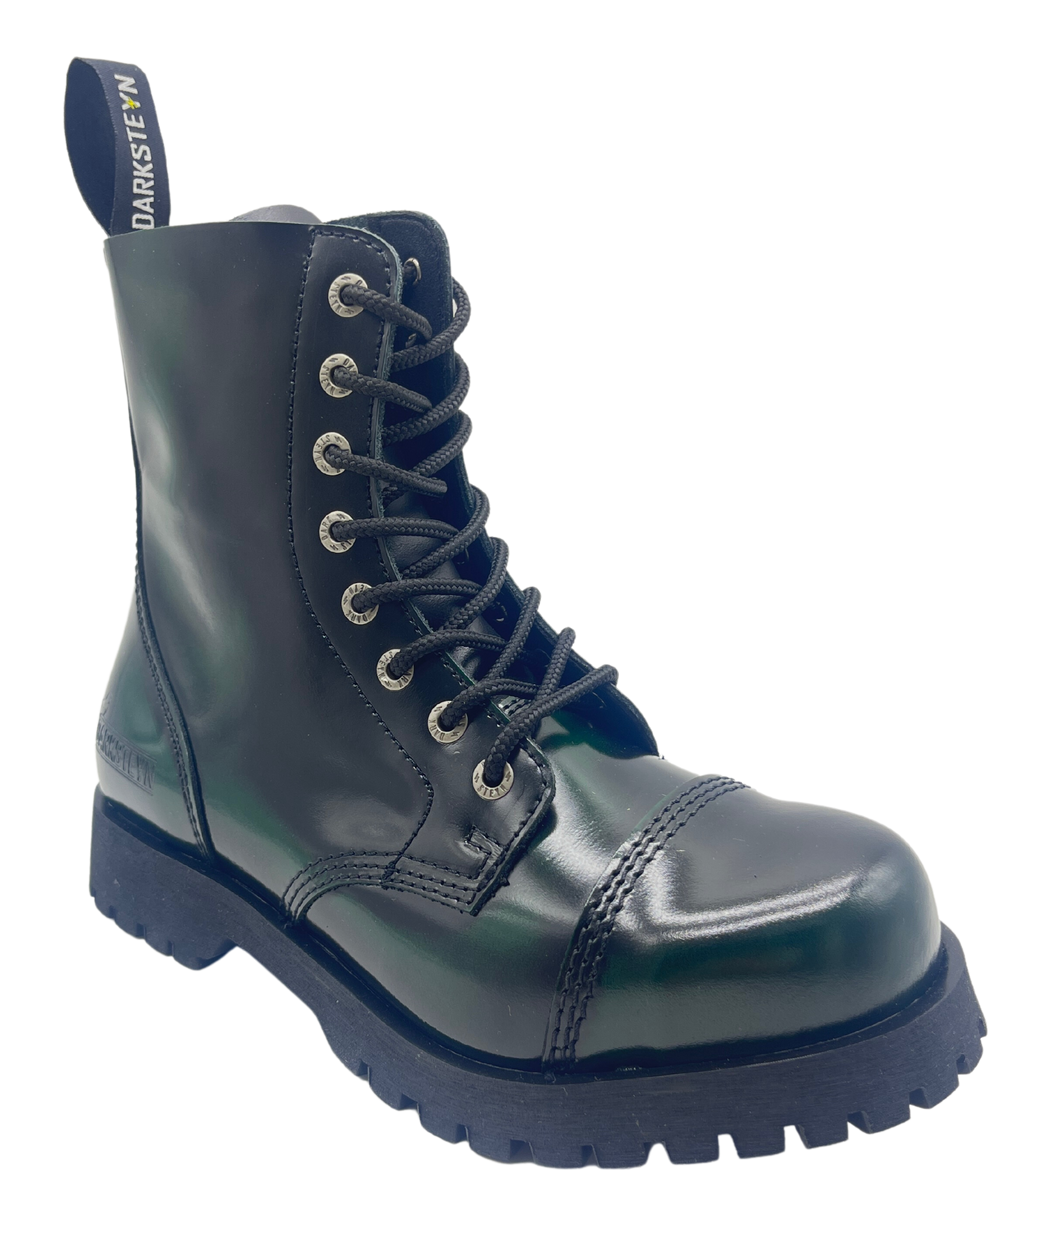 Darksteyn Boots Shoes 8 Eye Ranger Premium Boots Green Green